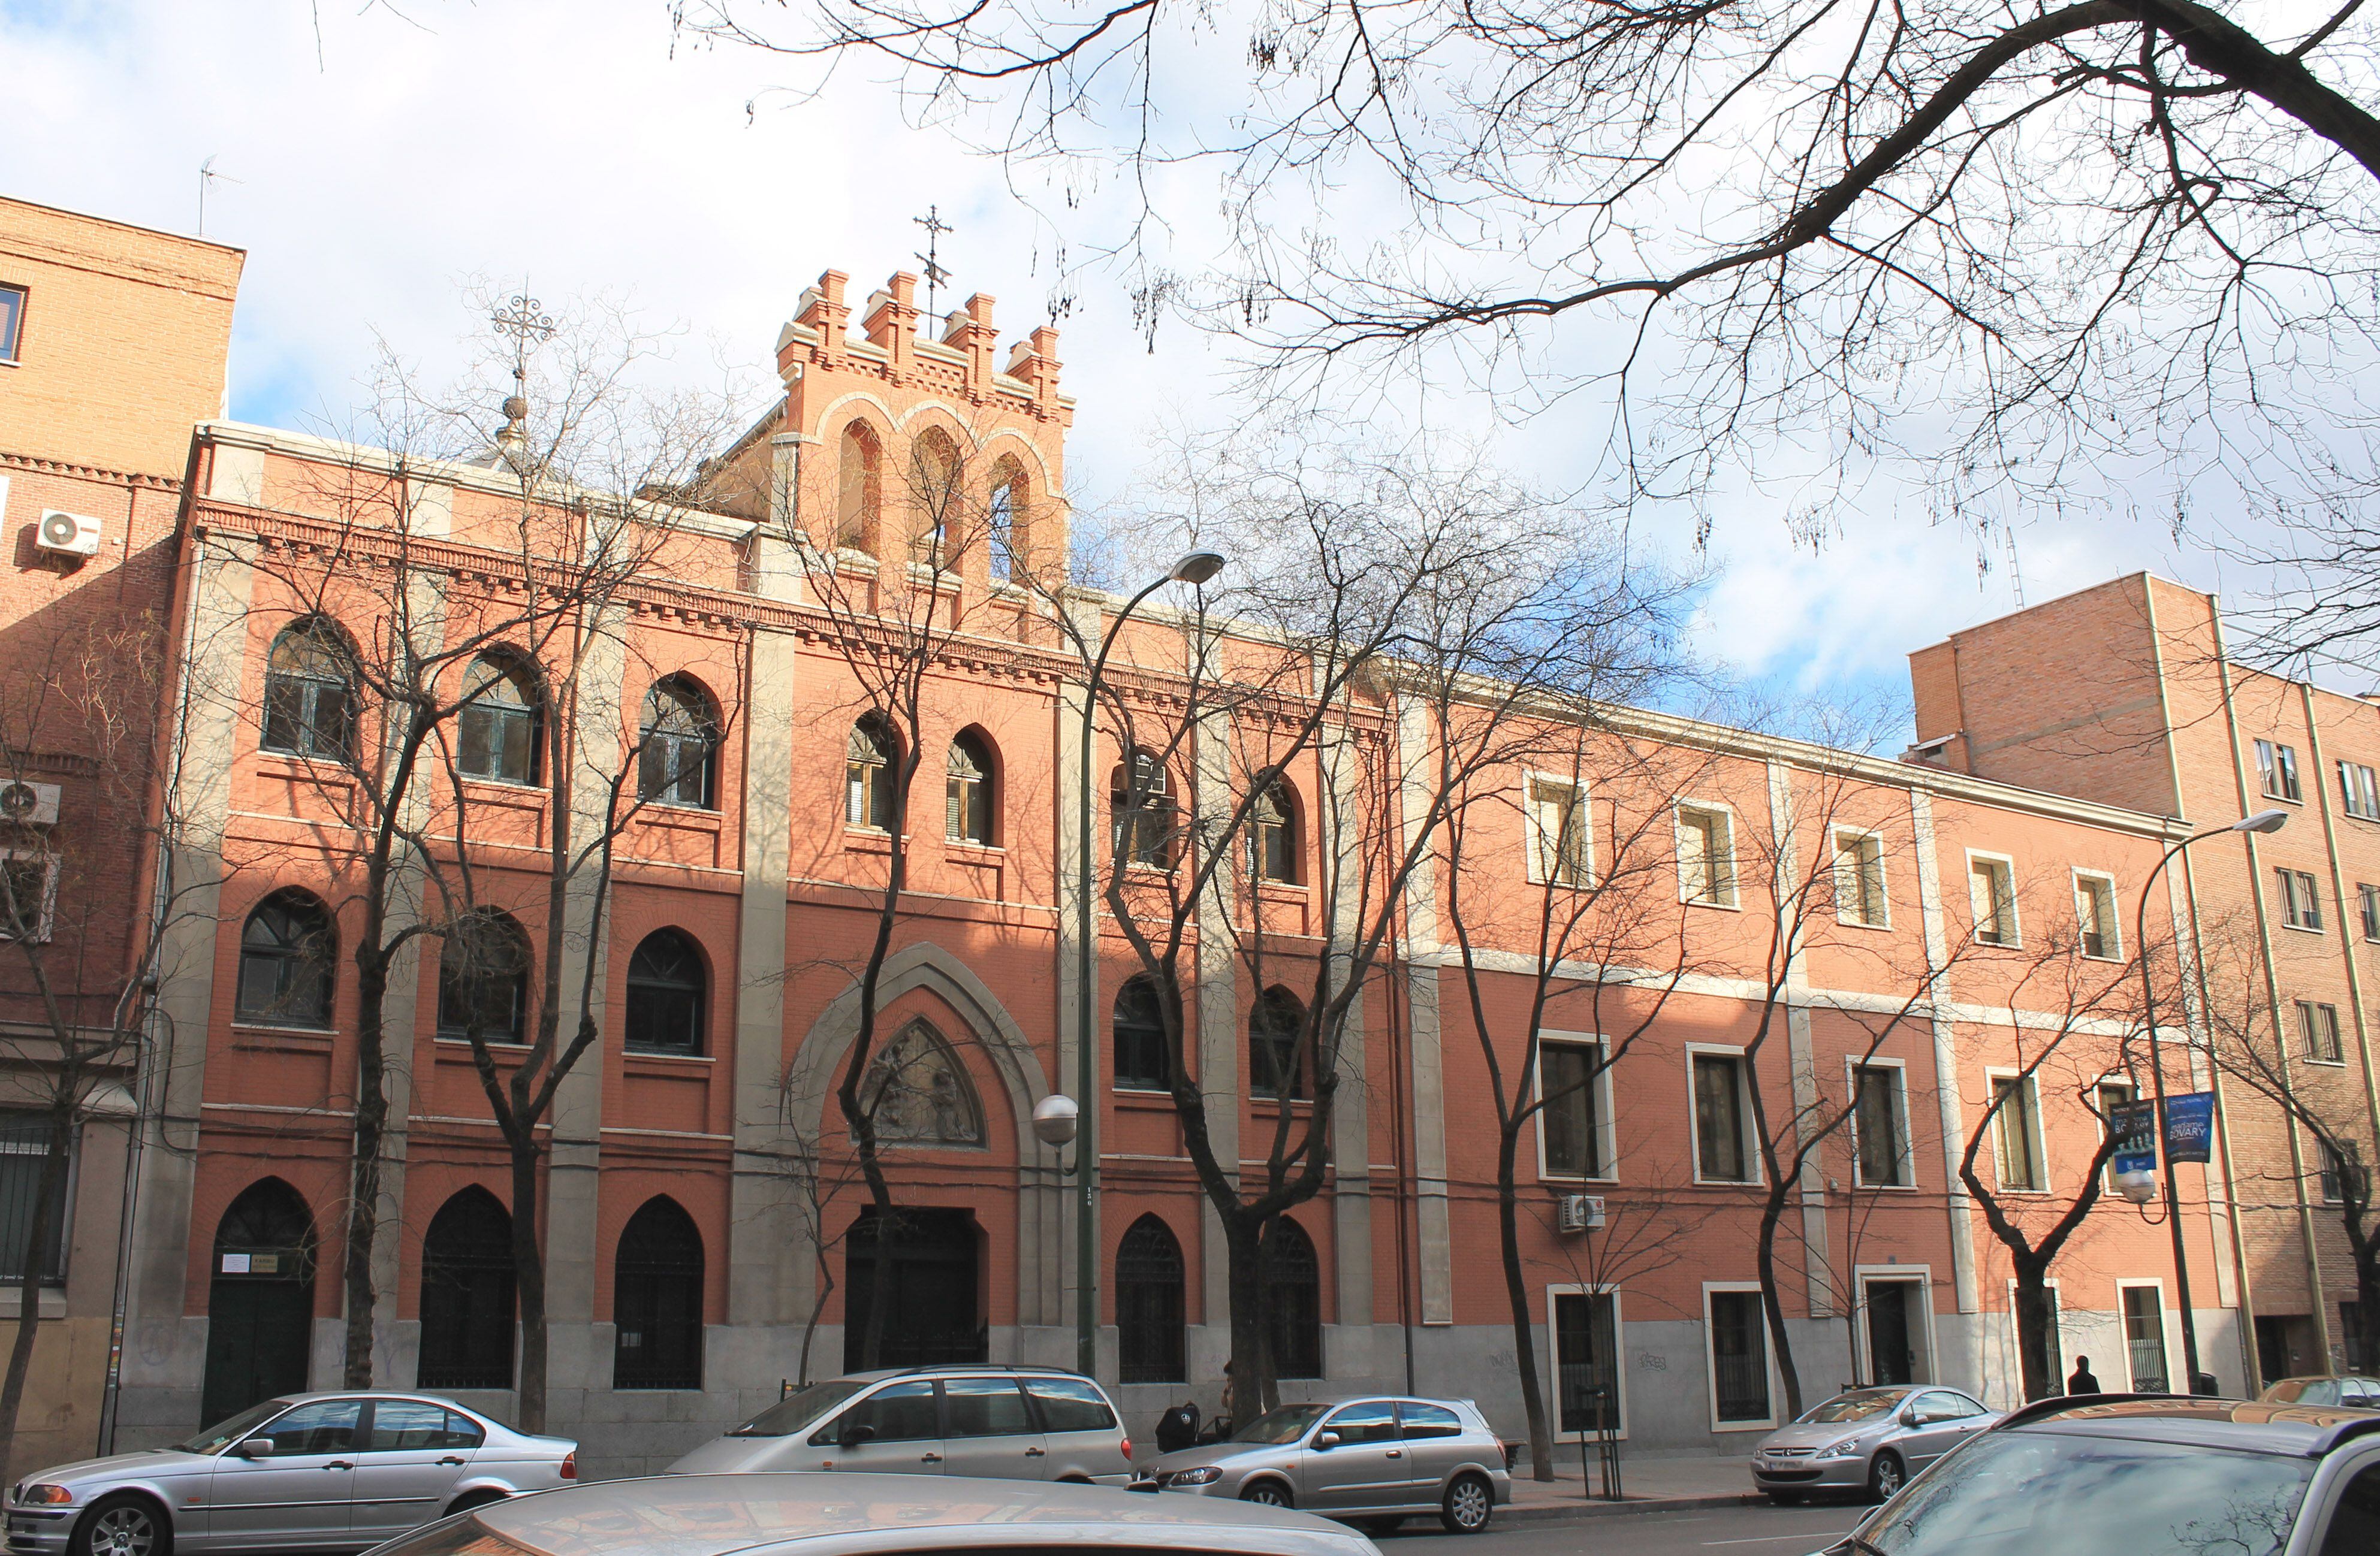 El Colegio de Divina Pastora (Santa Engracia, 142) fue la Prisión de Santa Engracia.